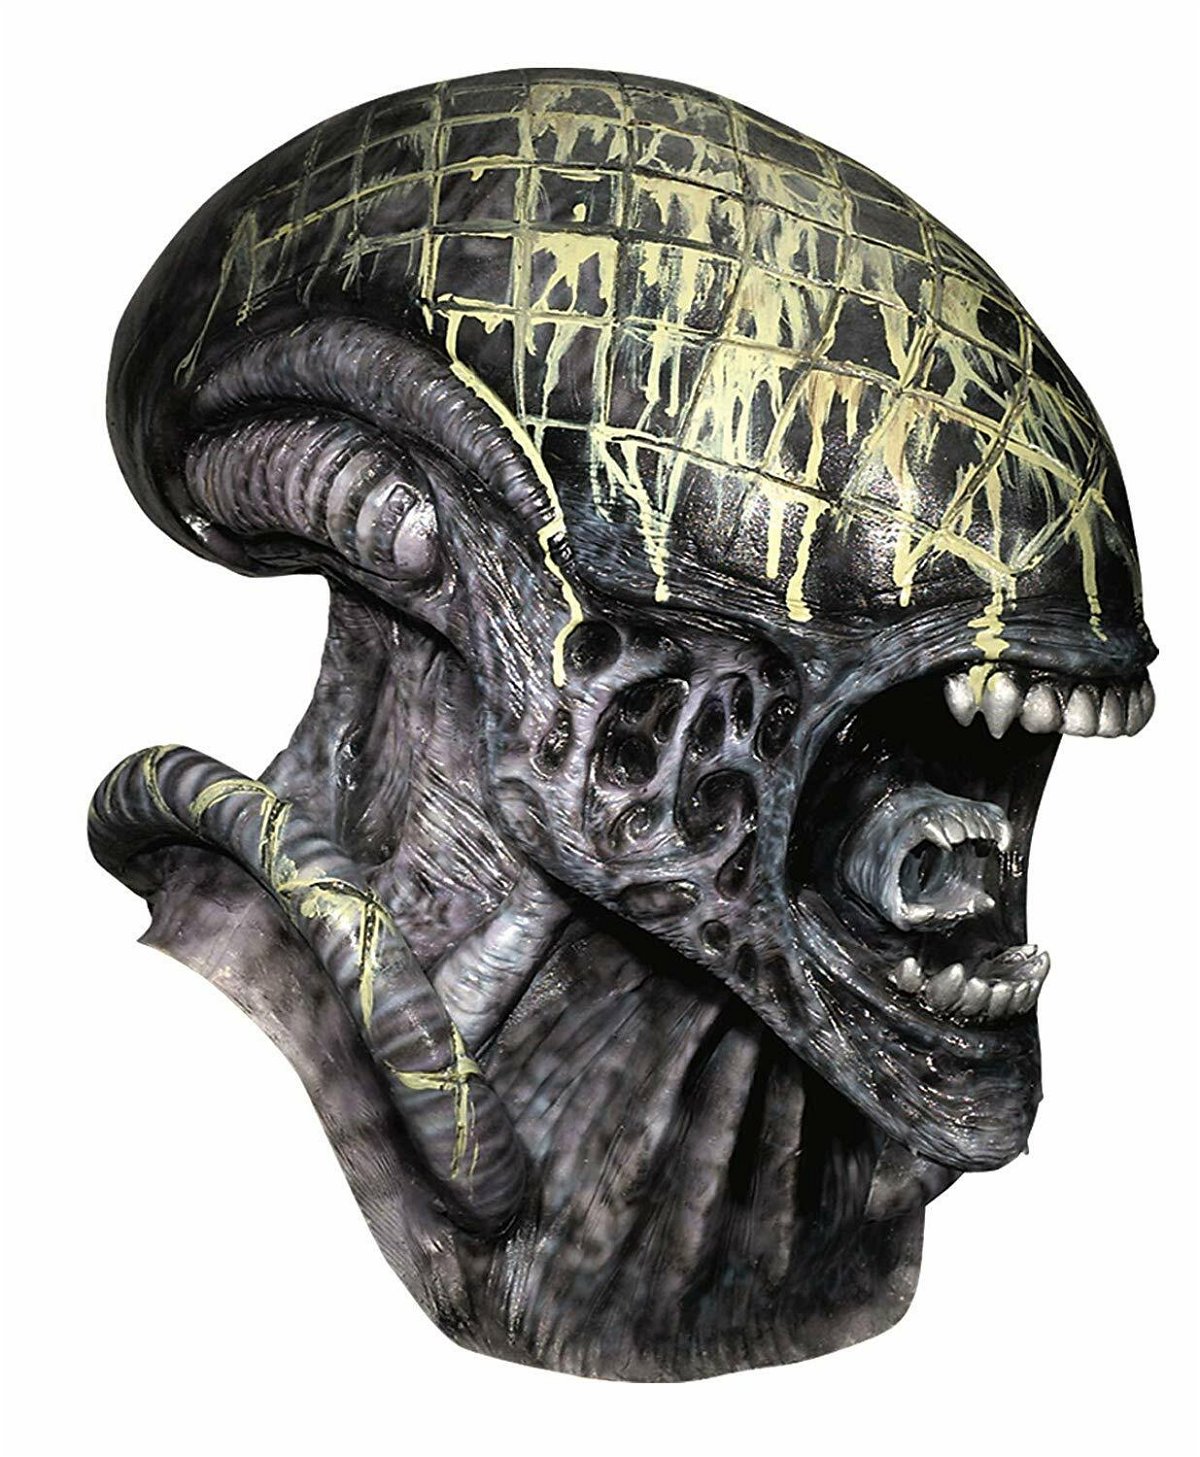 Alien è una maschera che inquieta da decenni